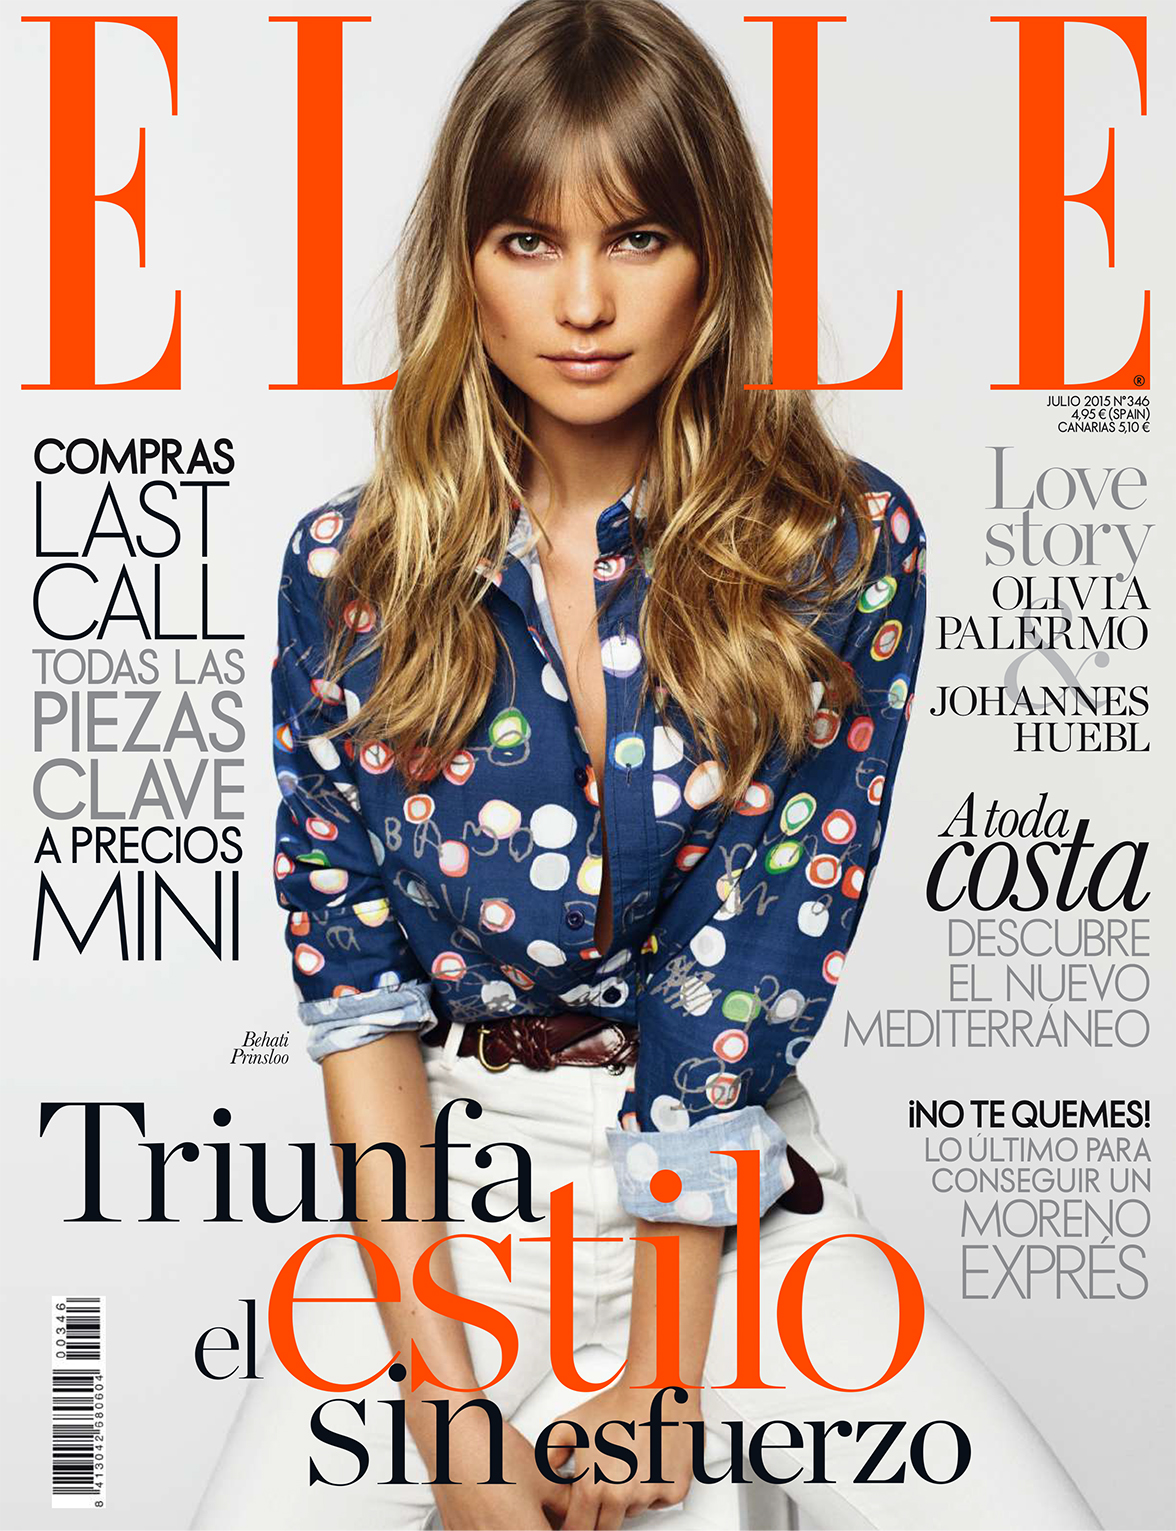 Behati Elle Spain Cover DK.jpg